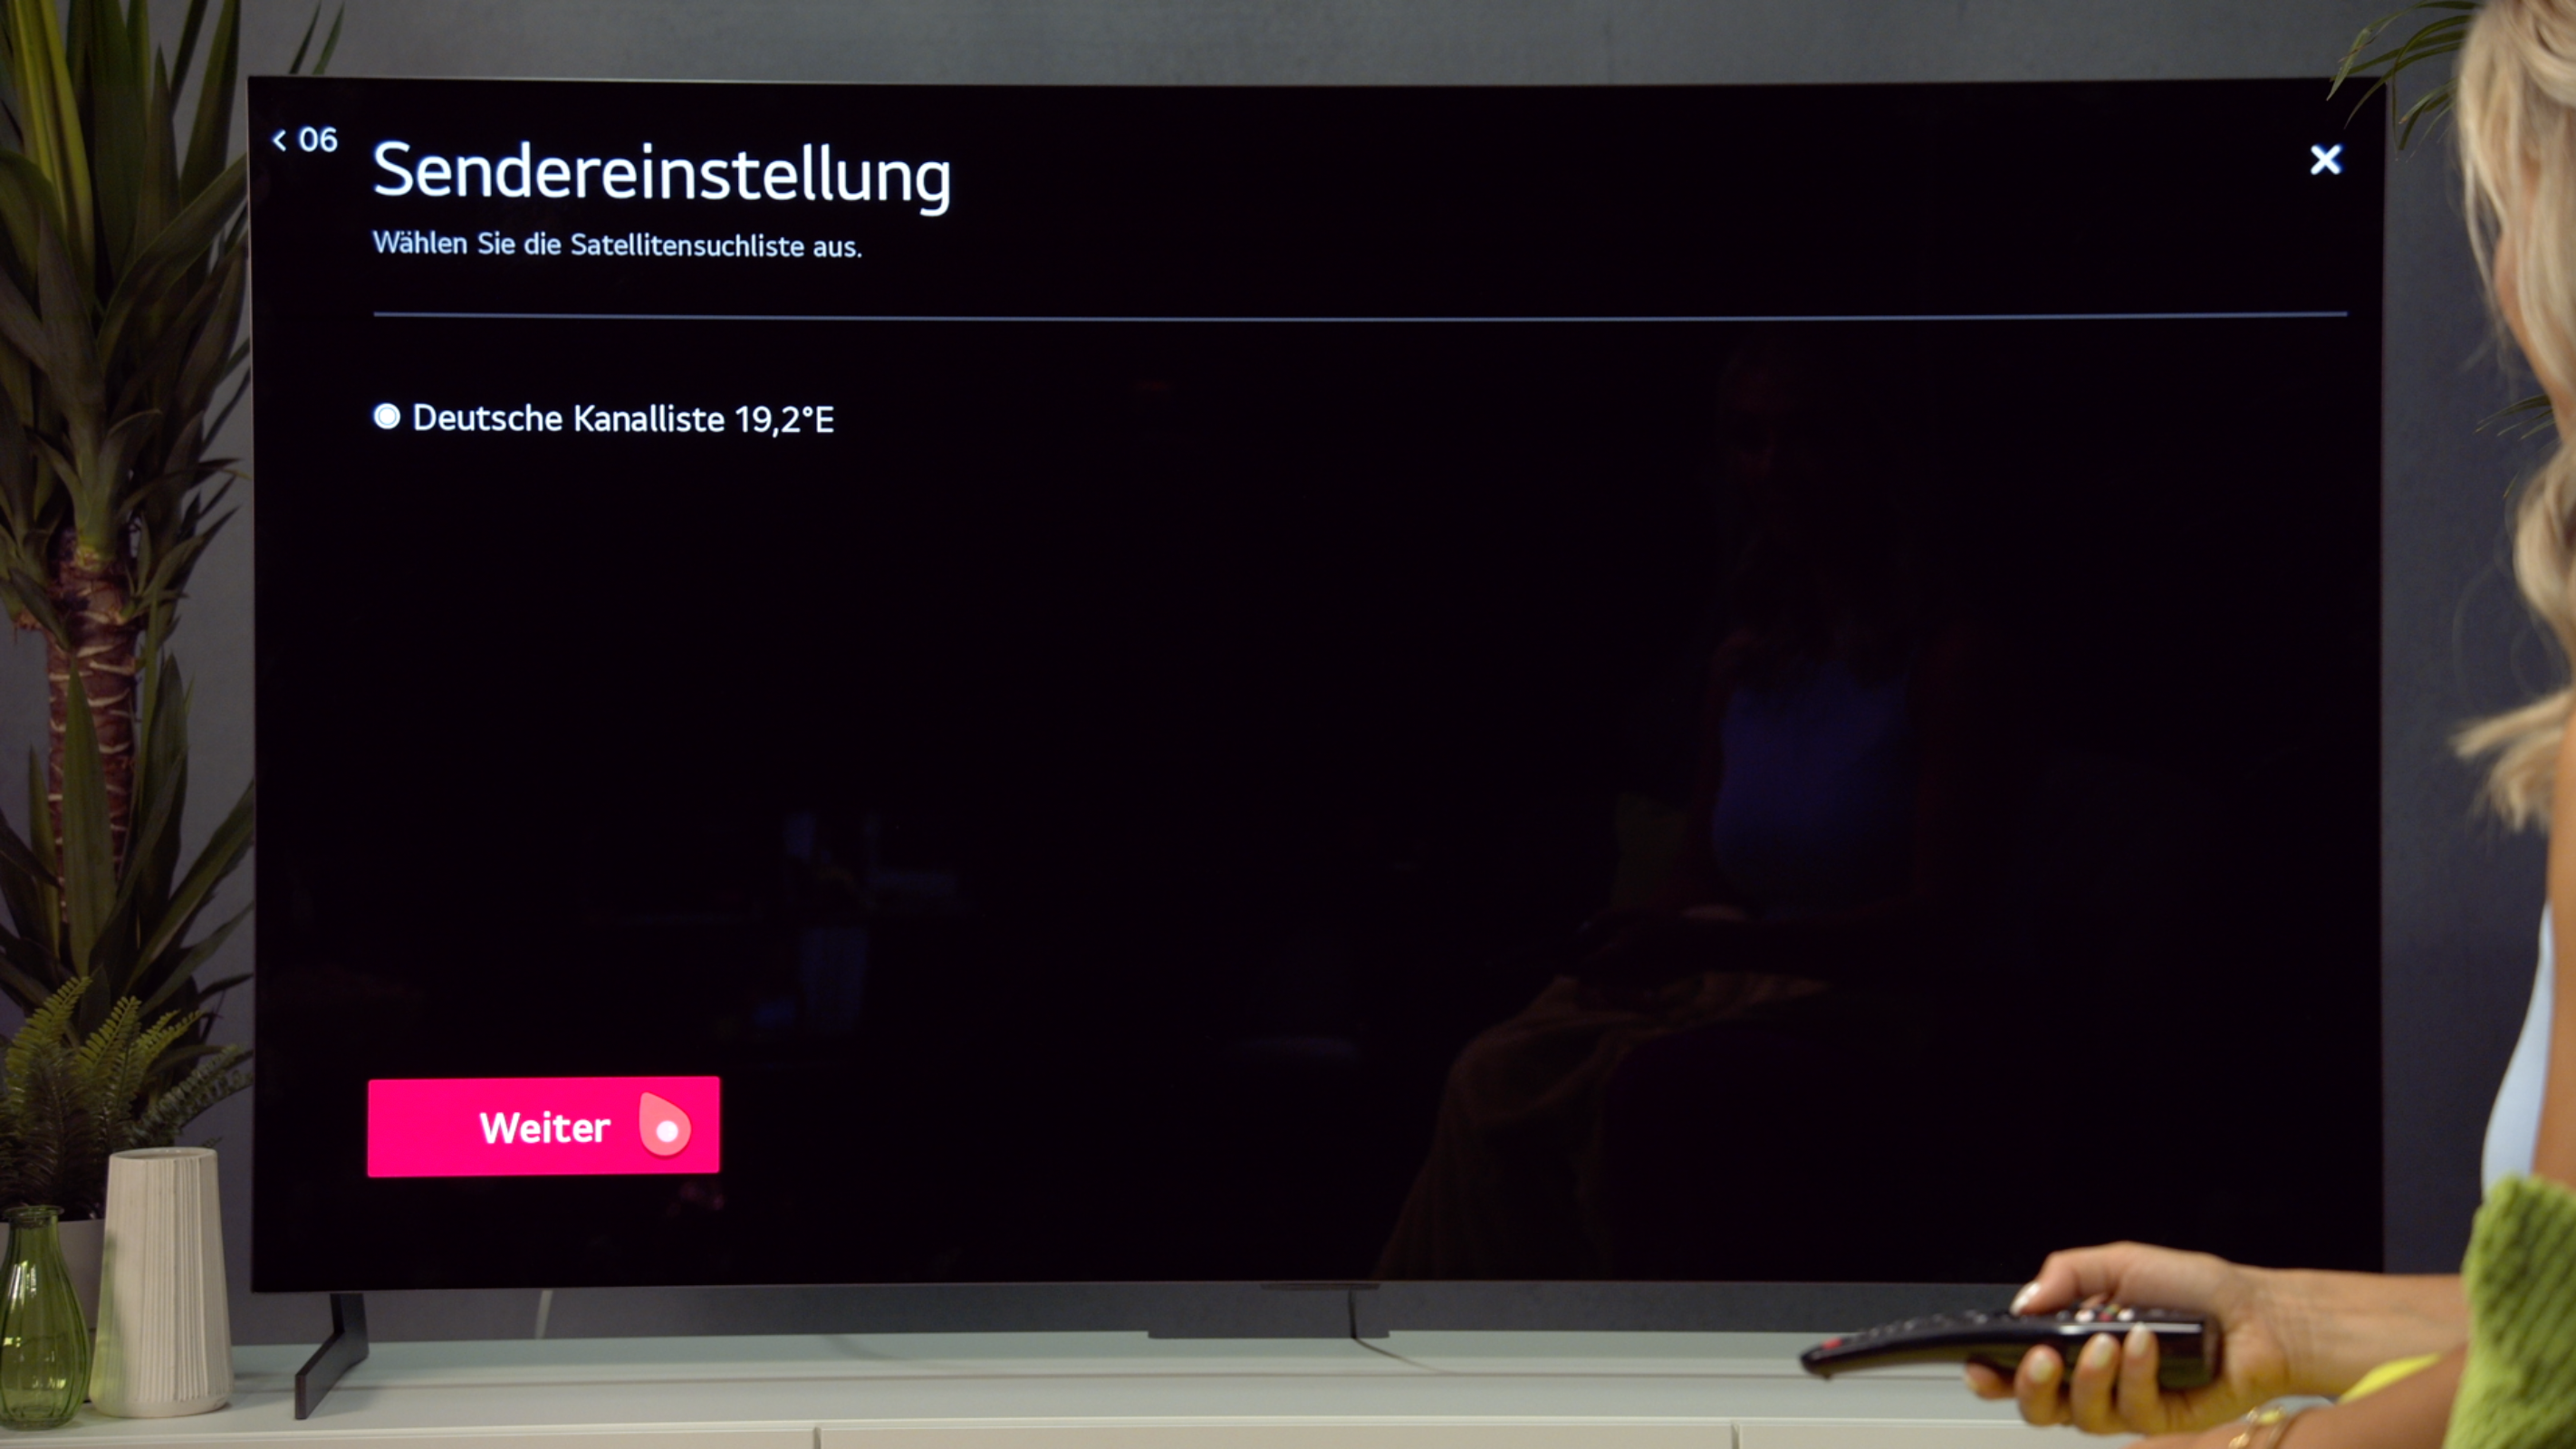 Erscheint die Deutsche Kanalliste 19,2°E drücke auf "Weiter".